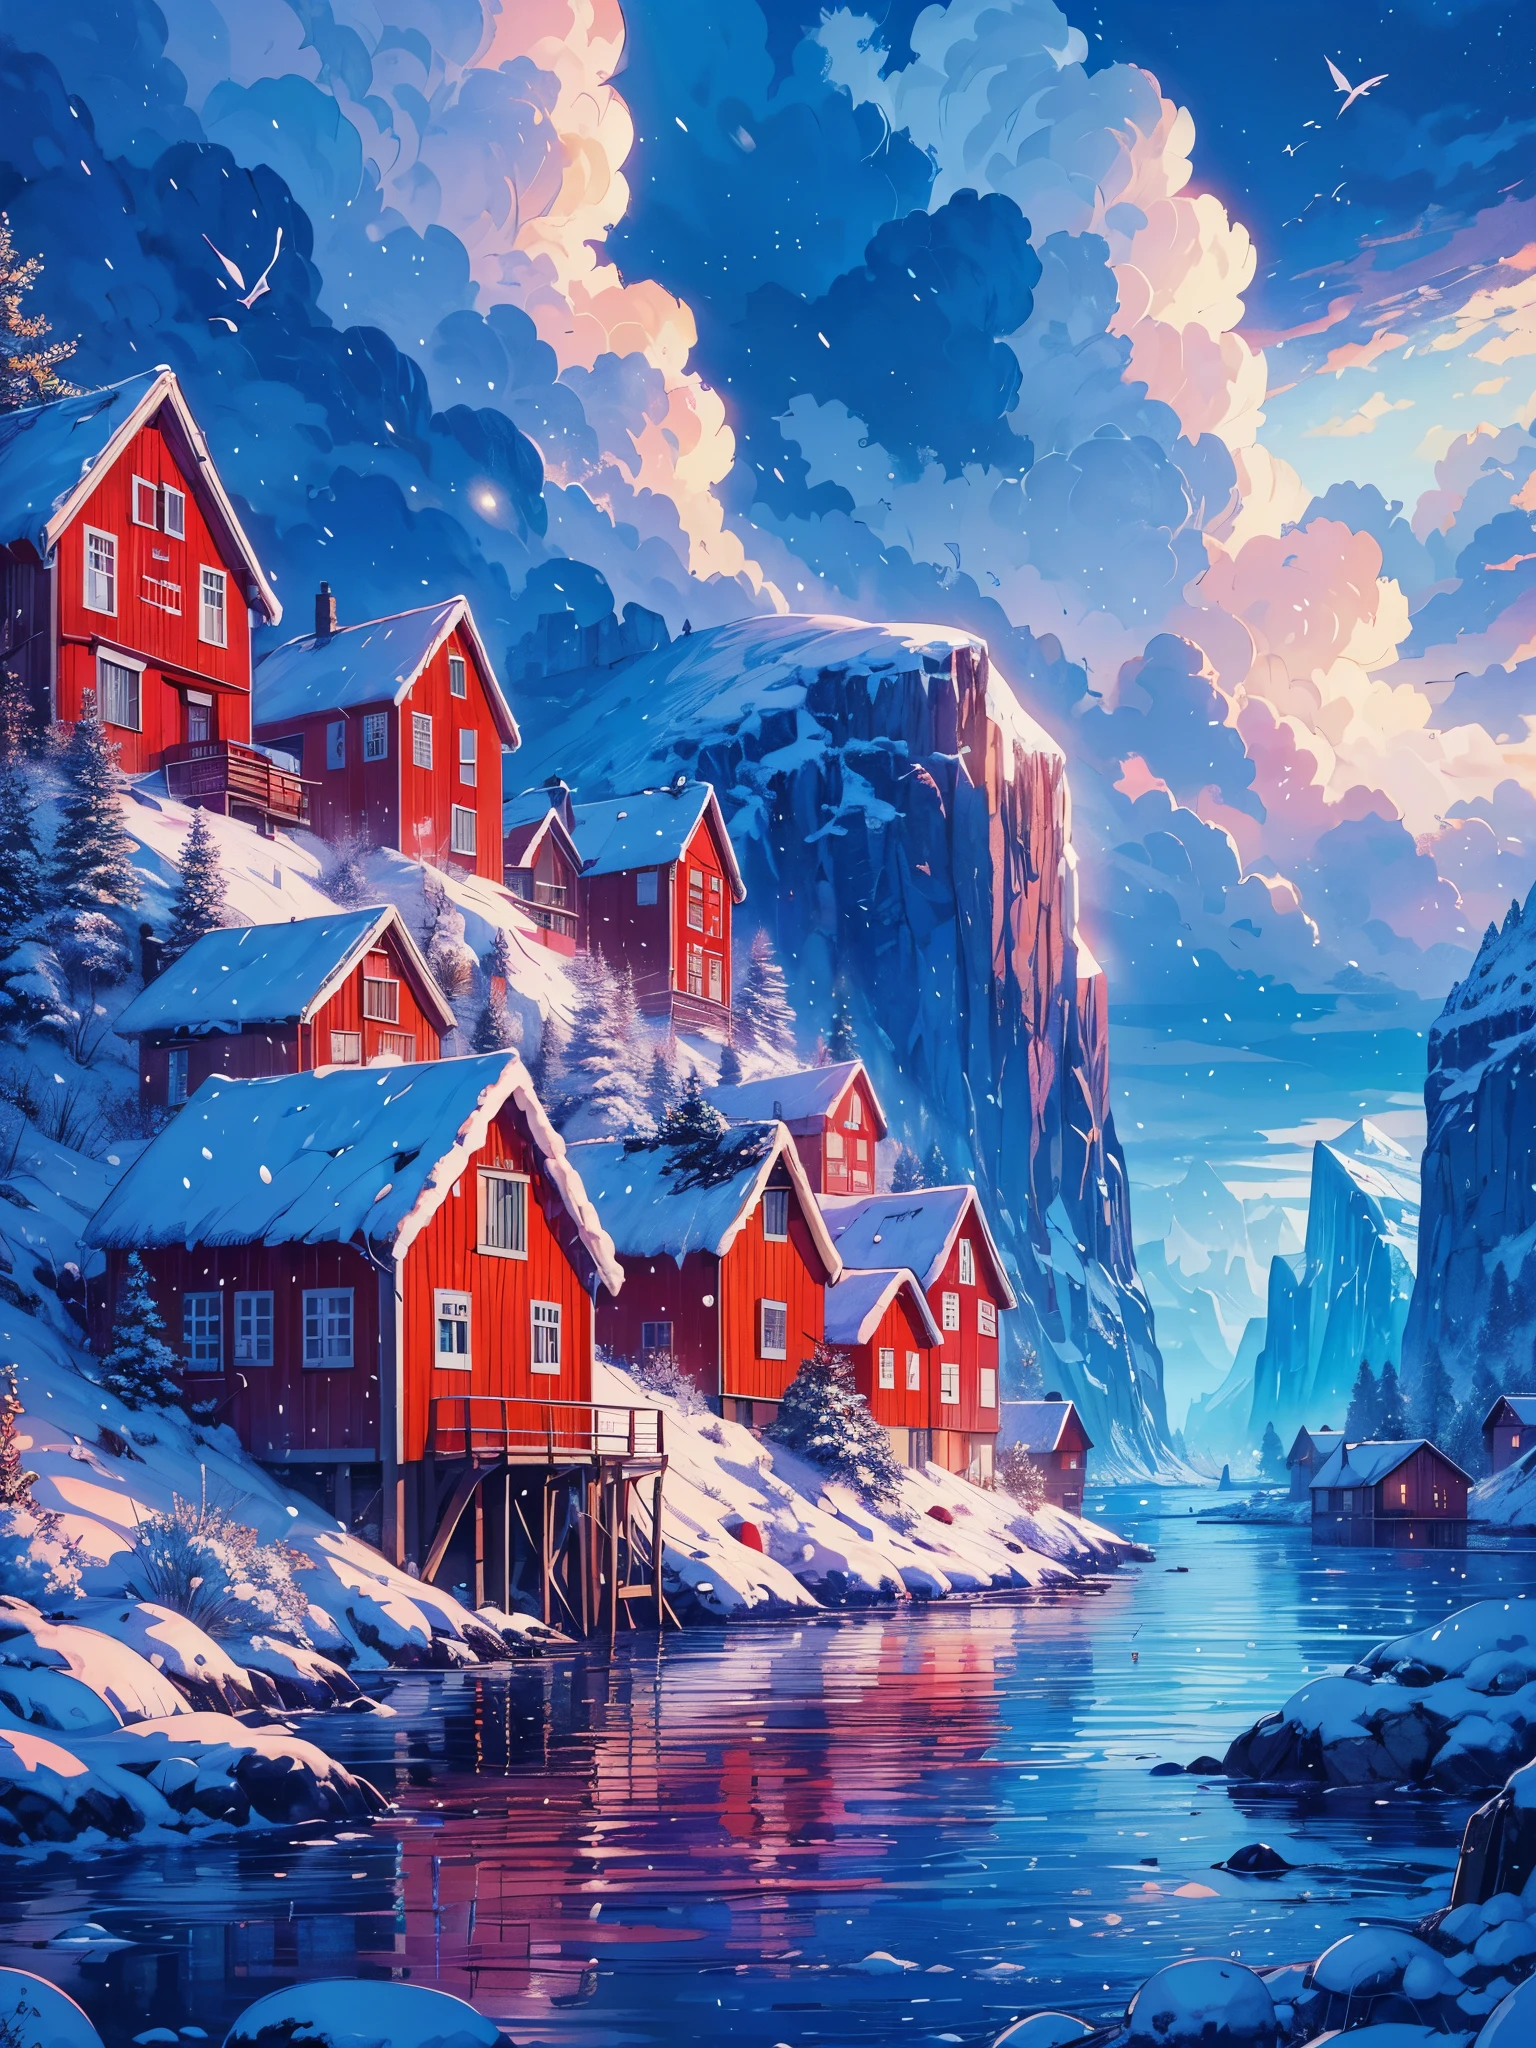 Dessinez un art animé numérique d&#39;une large scène lofi de maisons rouges sur une île norvégienne près d&#39;un lac avec un iceberg, chute de neige, soirée, heure bleue, beau ciel nuageux, des tons de couleurs vibrants, chef-d&#39;œuvre, scène paisible